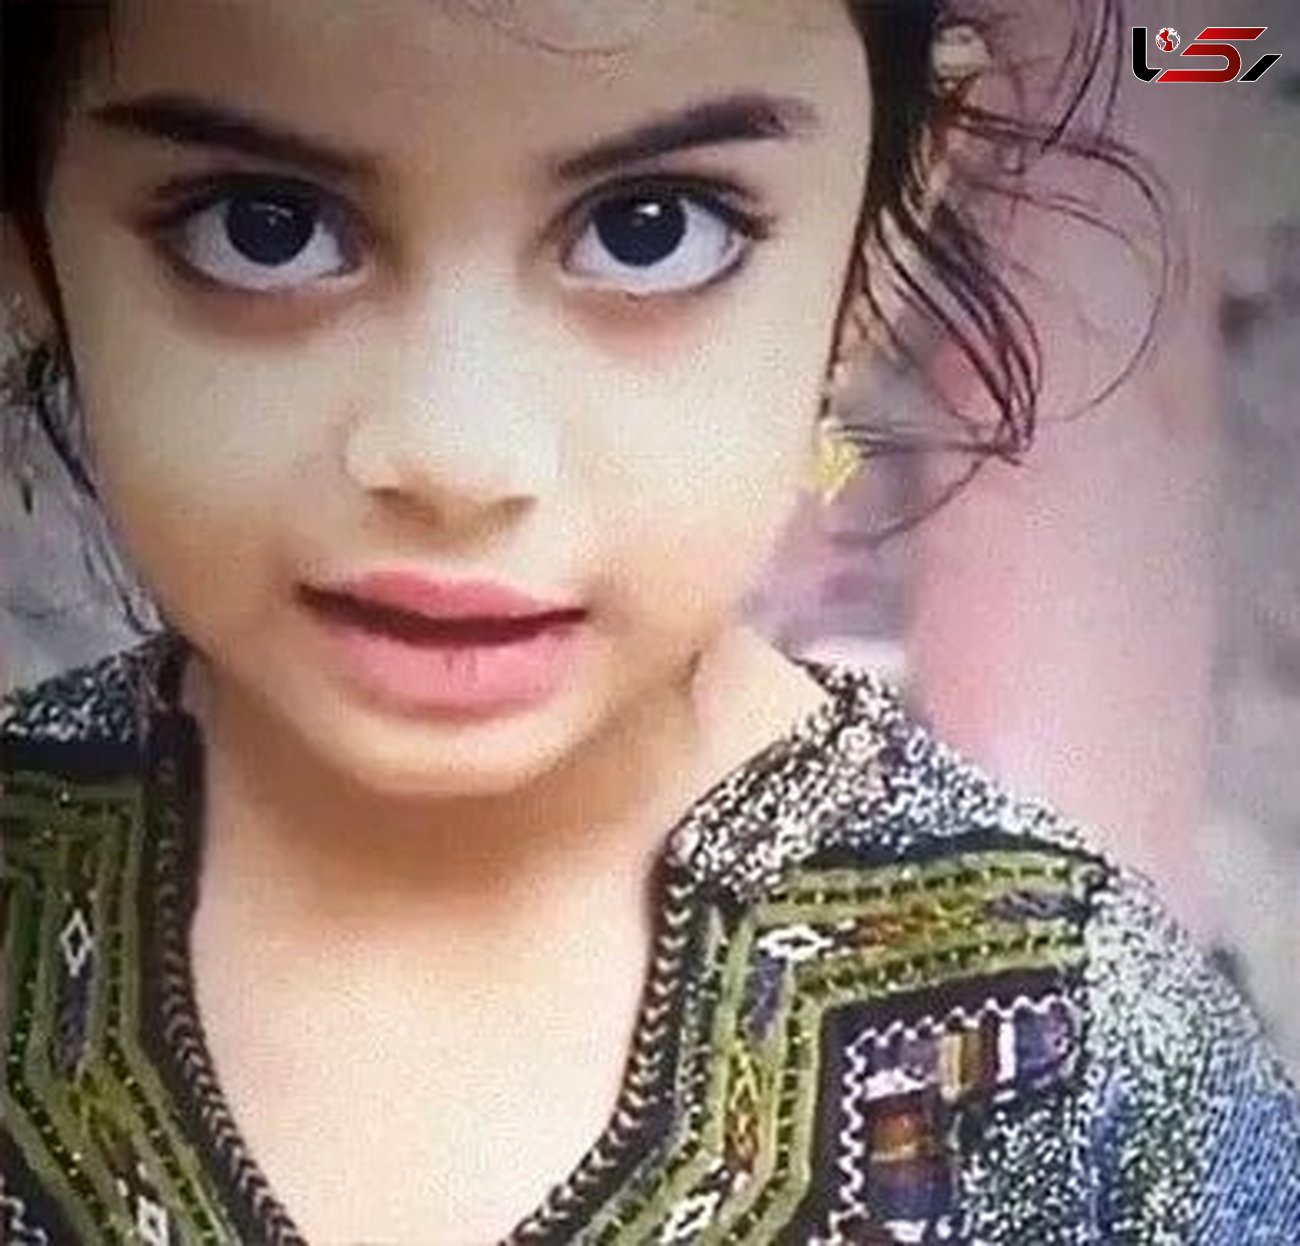 این دختر بچه زیبا با گلوله کشته شد ! + عکس مونا کوچولو 